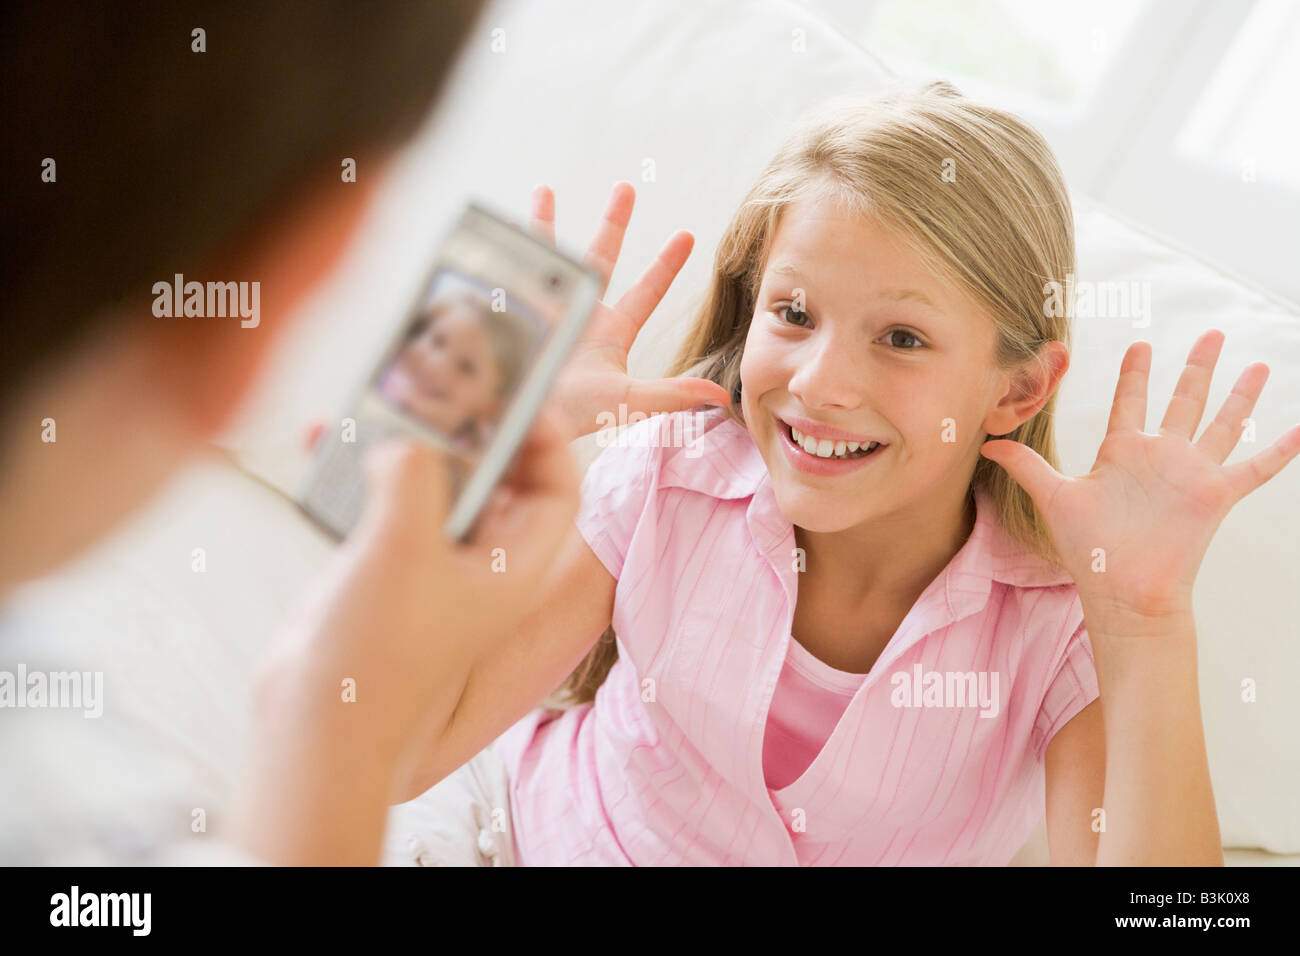 Kleiner Junge unter Bild lächelnden jungen Mädchens mit Kamera-Handy im Innenbereich Stockfoto